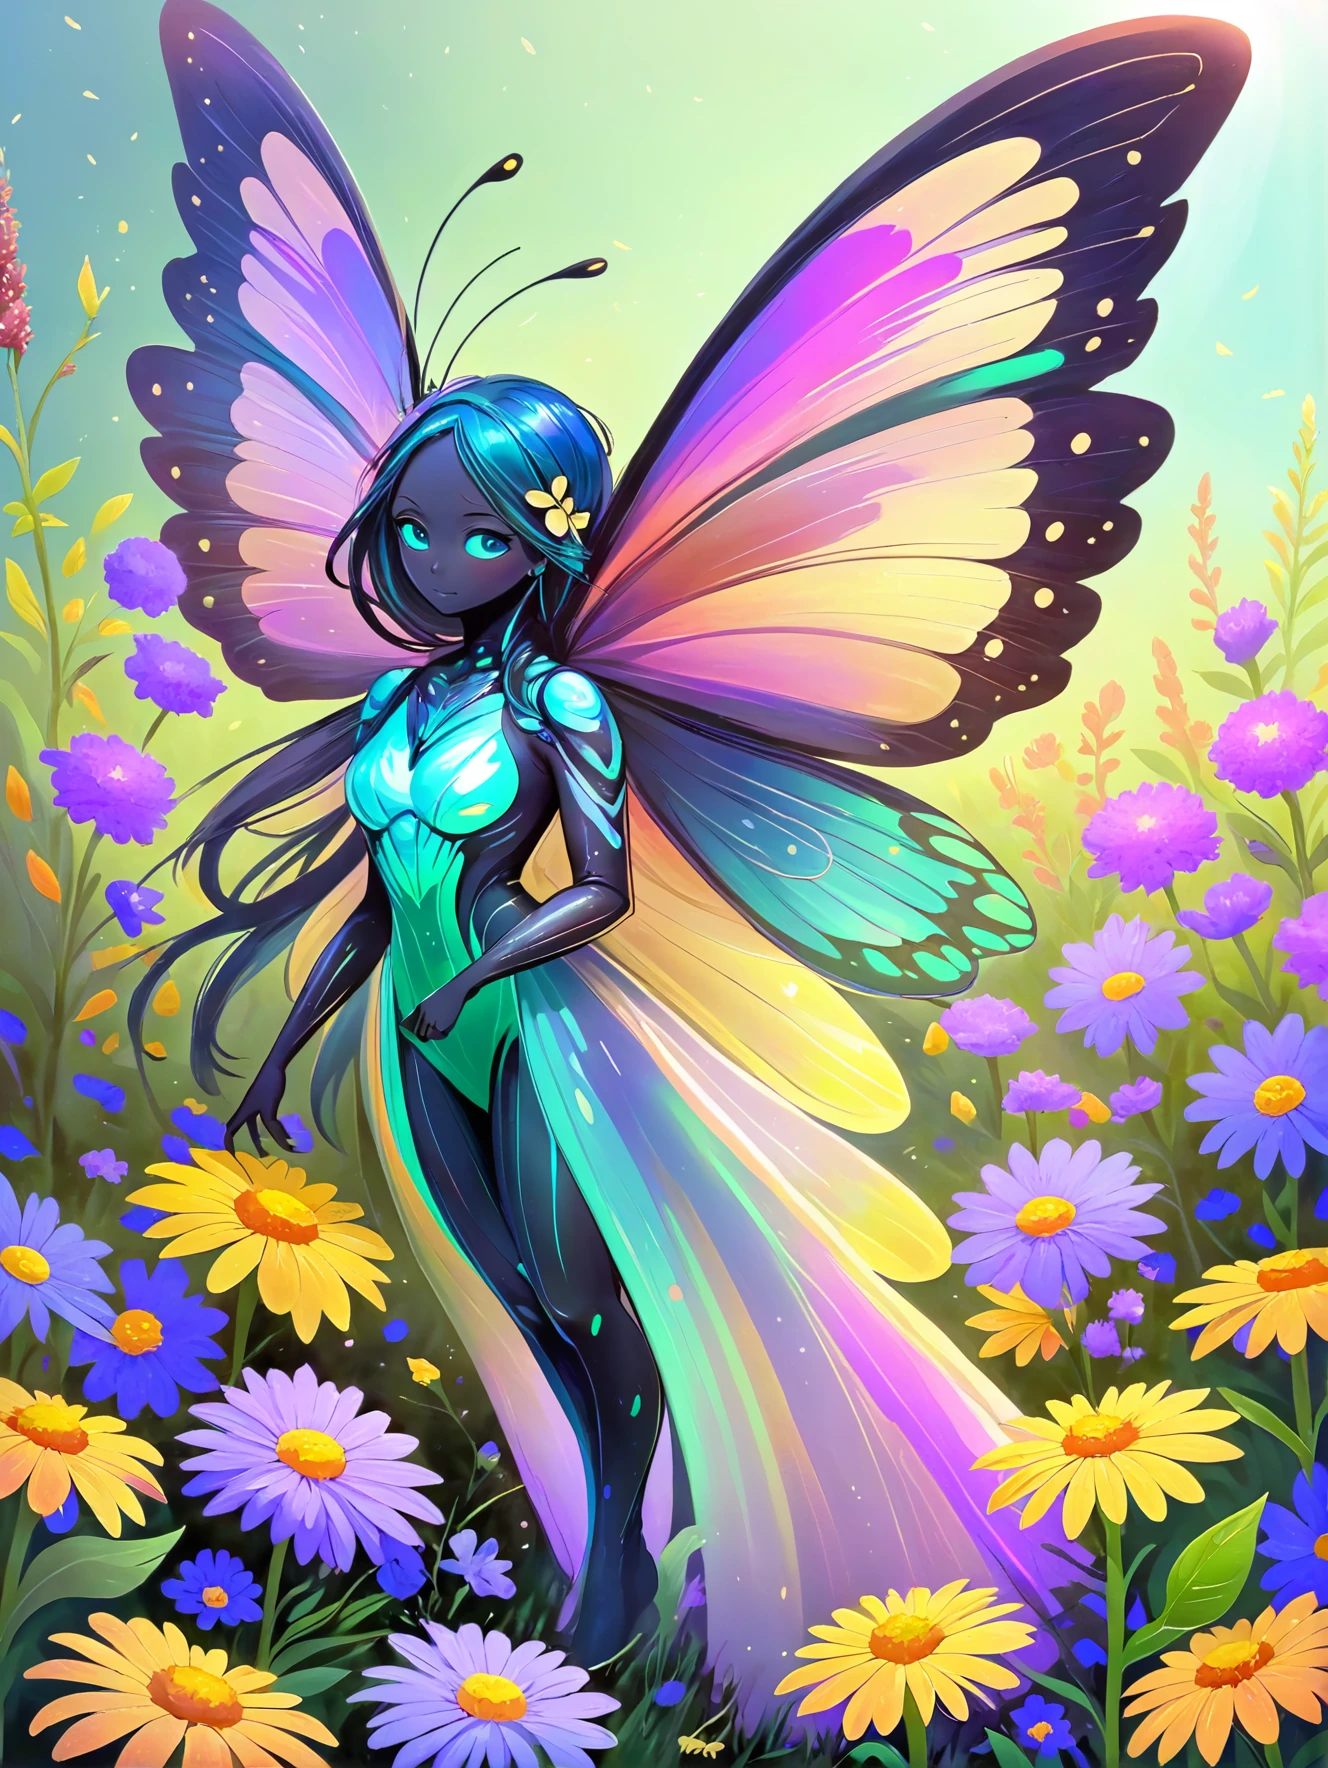 充满活力的蝴蝶精神, 有着彩虹色的翅膀, 在一片野花丛中翩翩起舞.